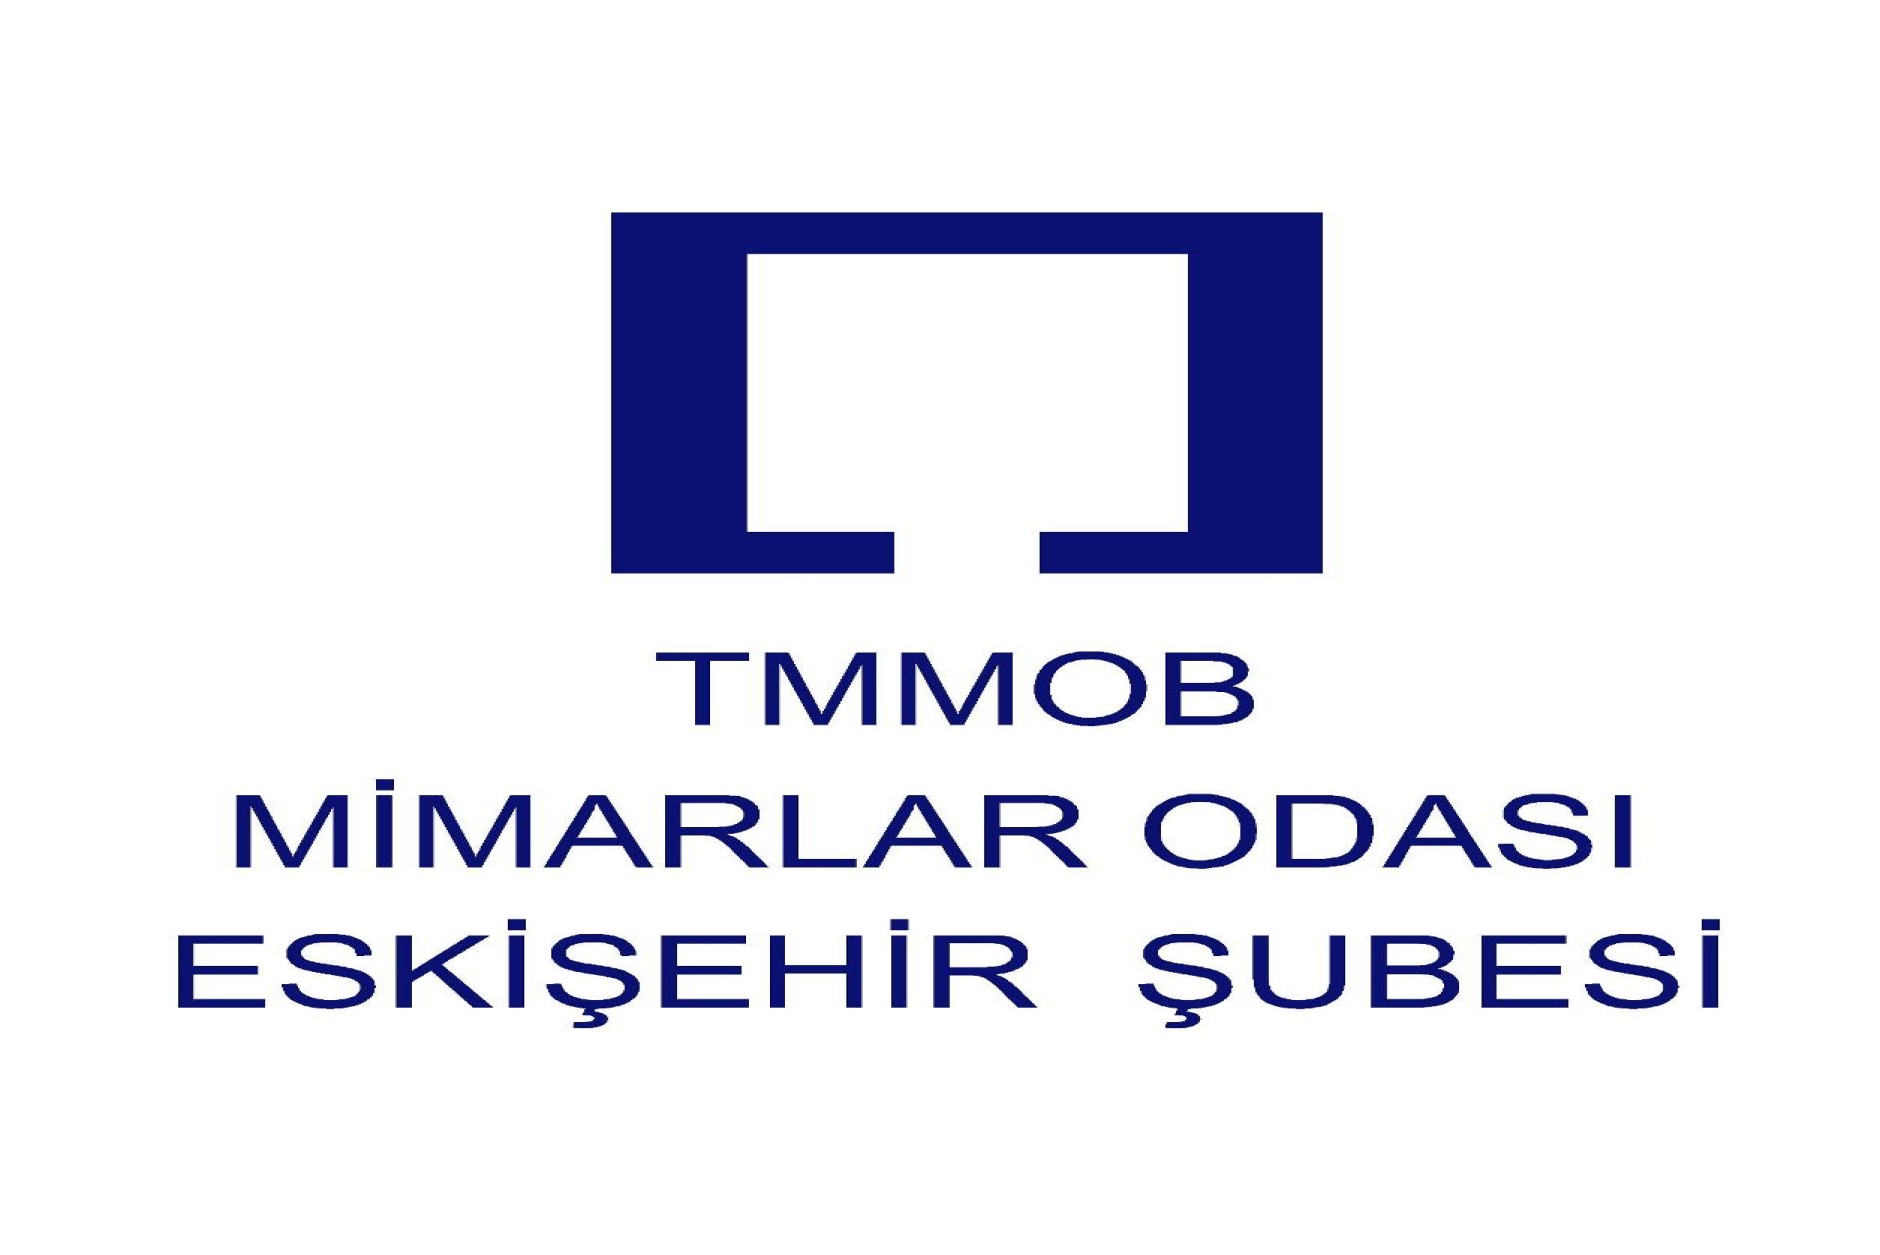 TMMOB Mimarlar Odası Eskişehir Şubesi 16. Olağan Genel Kurul ve Seçimleri,